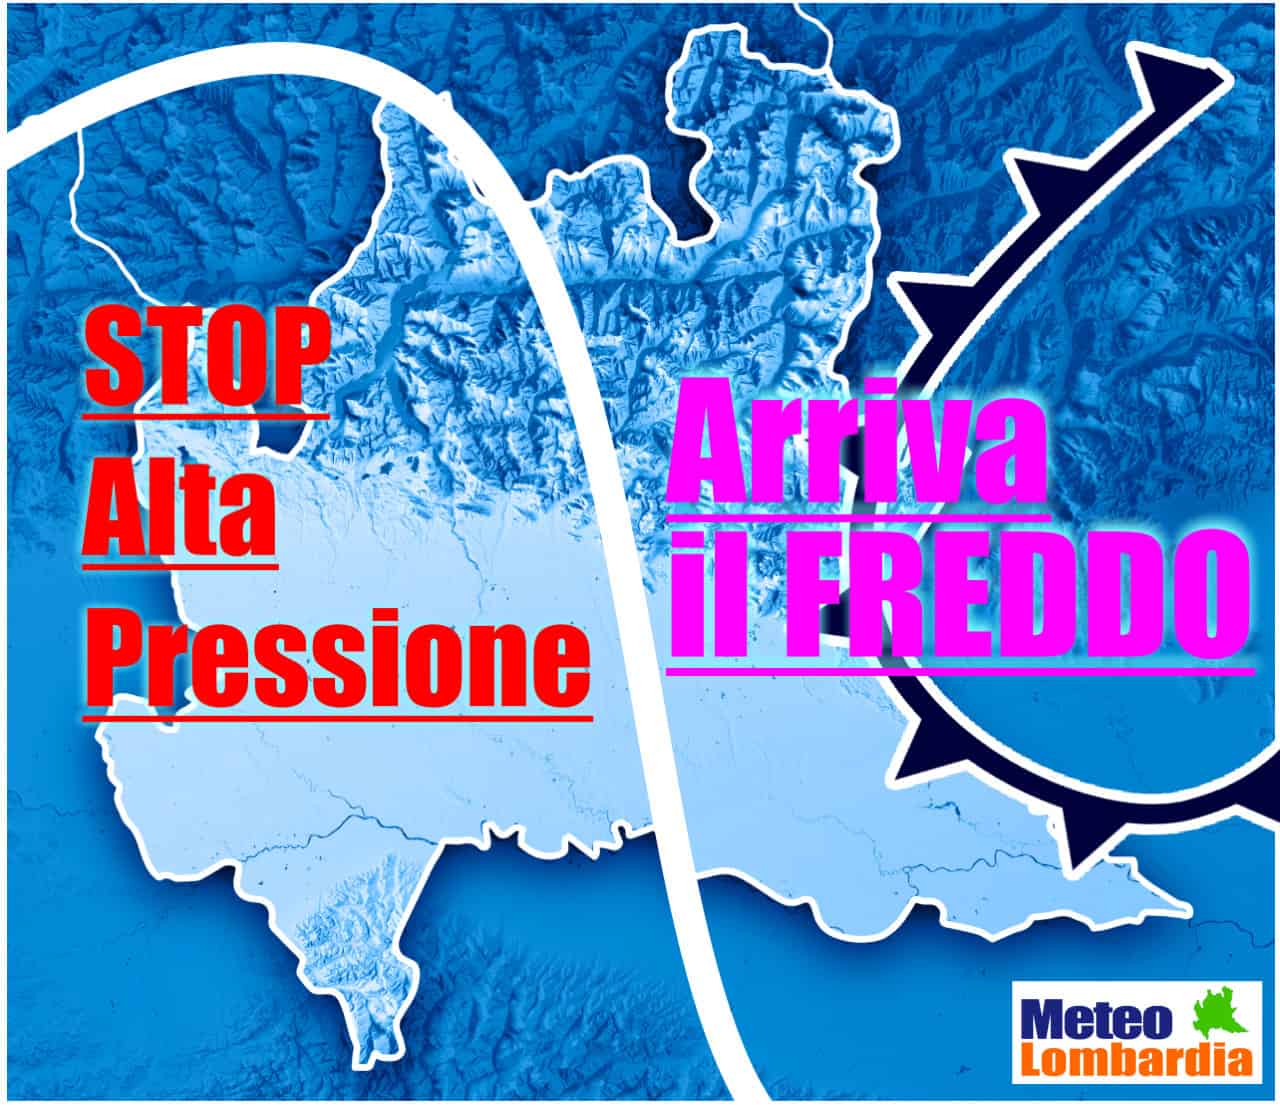 meteo lombardia evoluzione meteo - METEO: Lombardia, Alta Pressione vi diciamo QUANDO FINIRA’